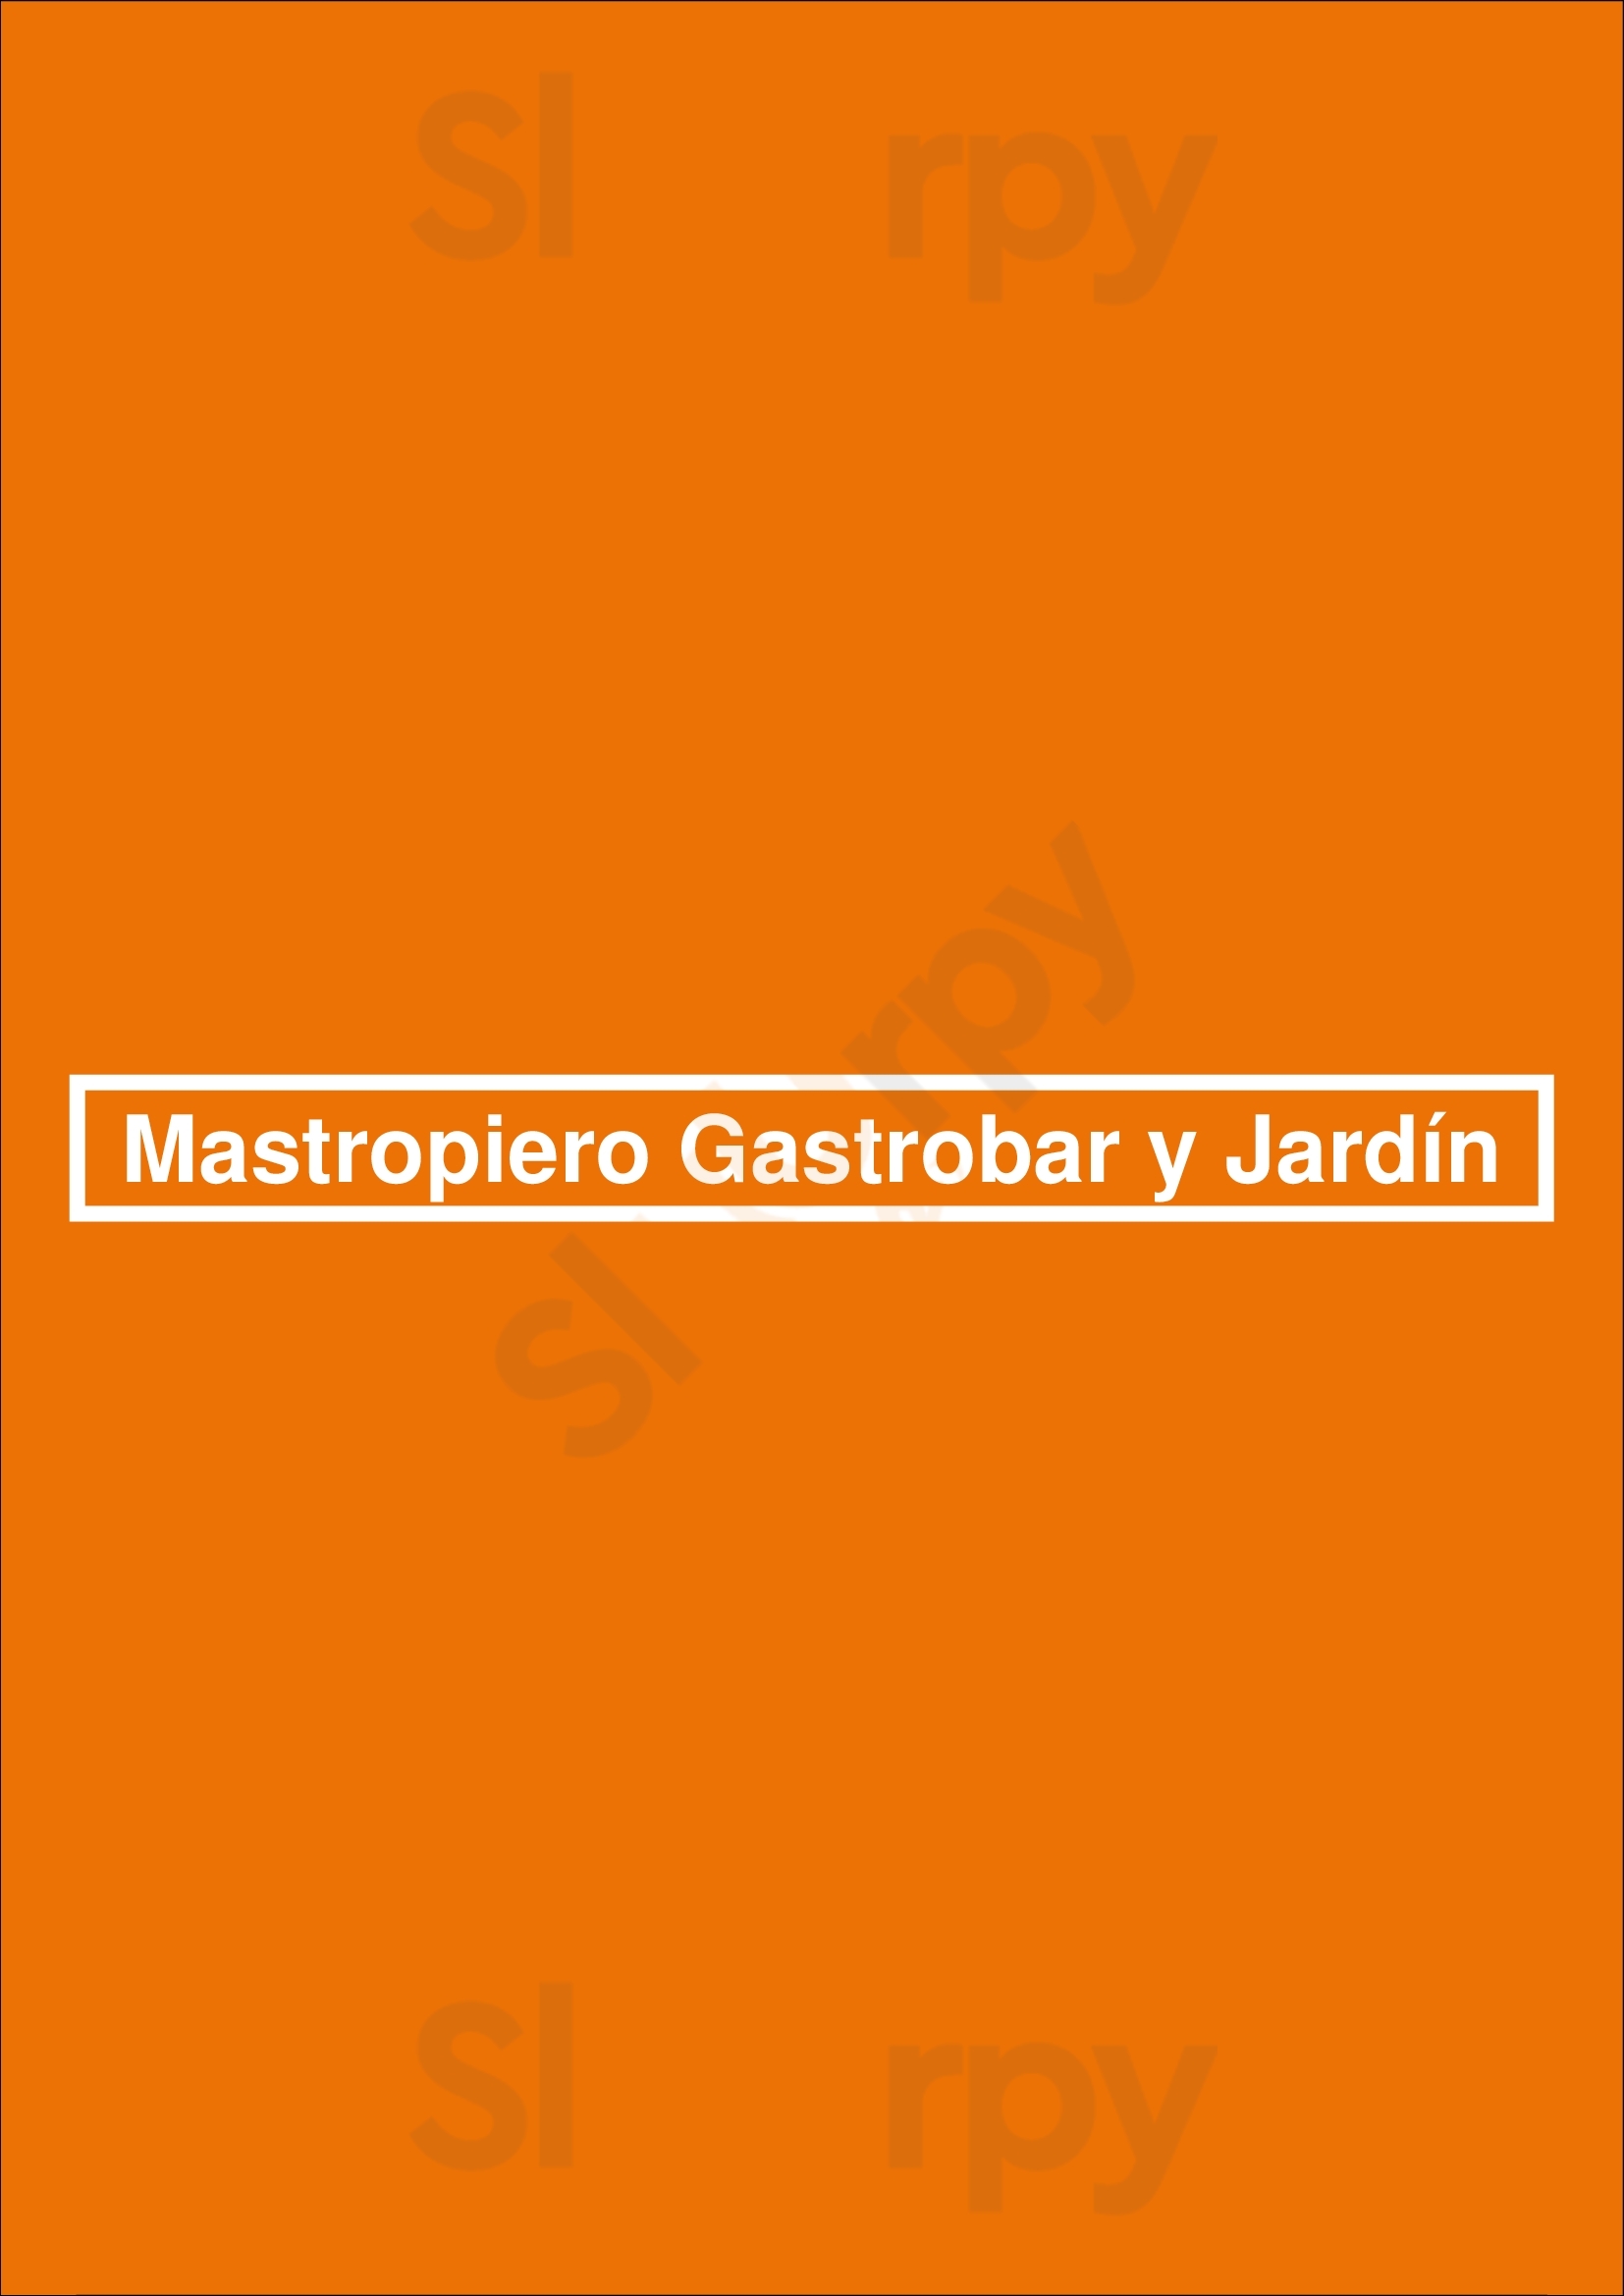 Mastropiero Gastrobar Y Jardín Cáceres Menu - 1